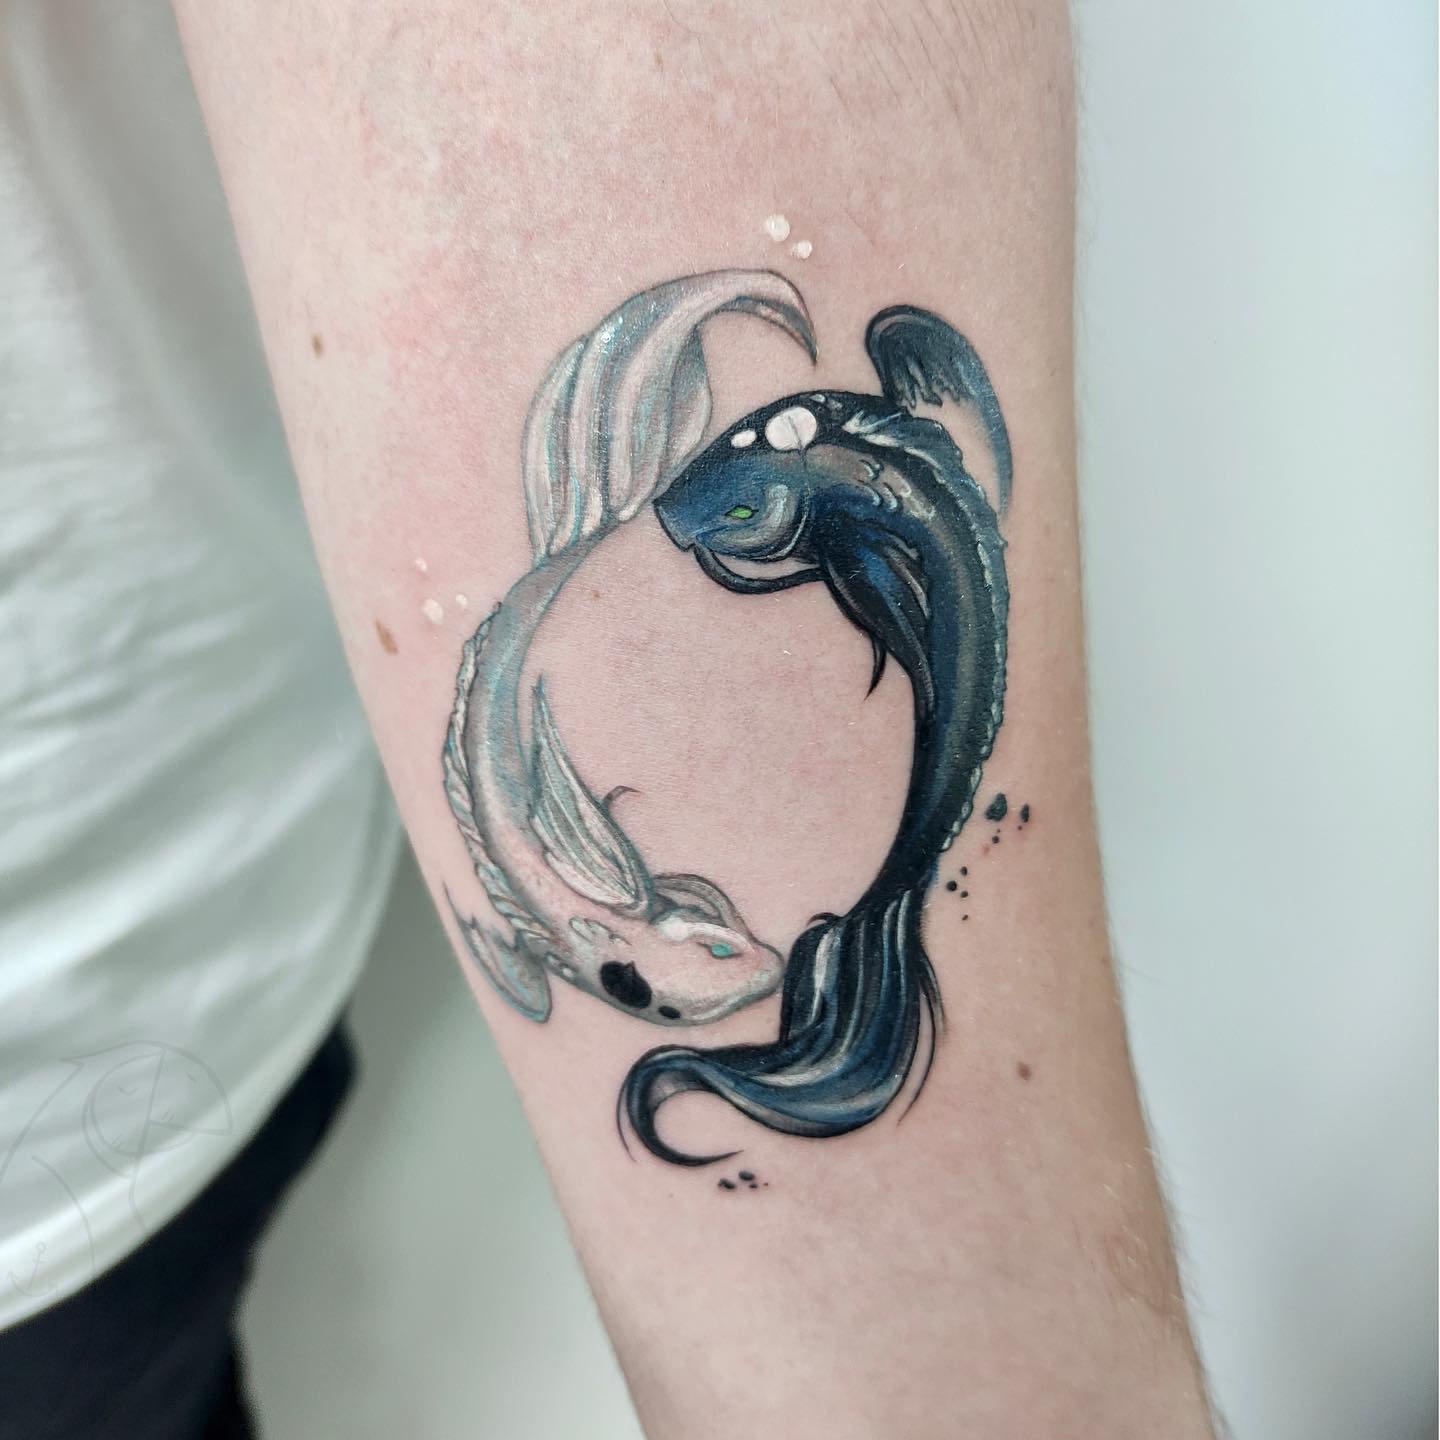 Tatuaje de pez koi pequeño